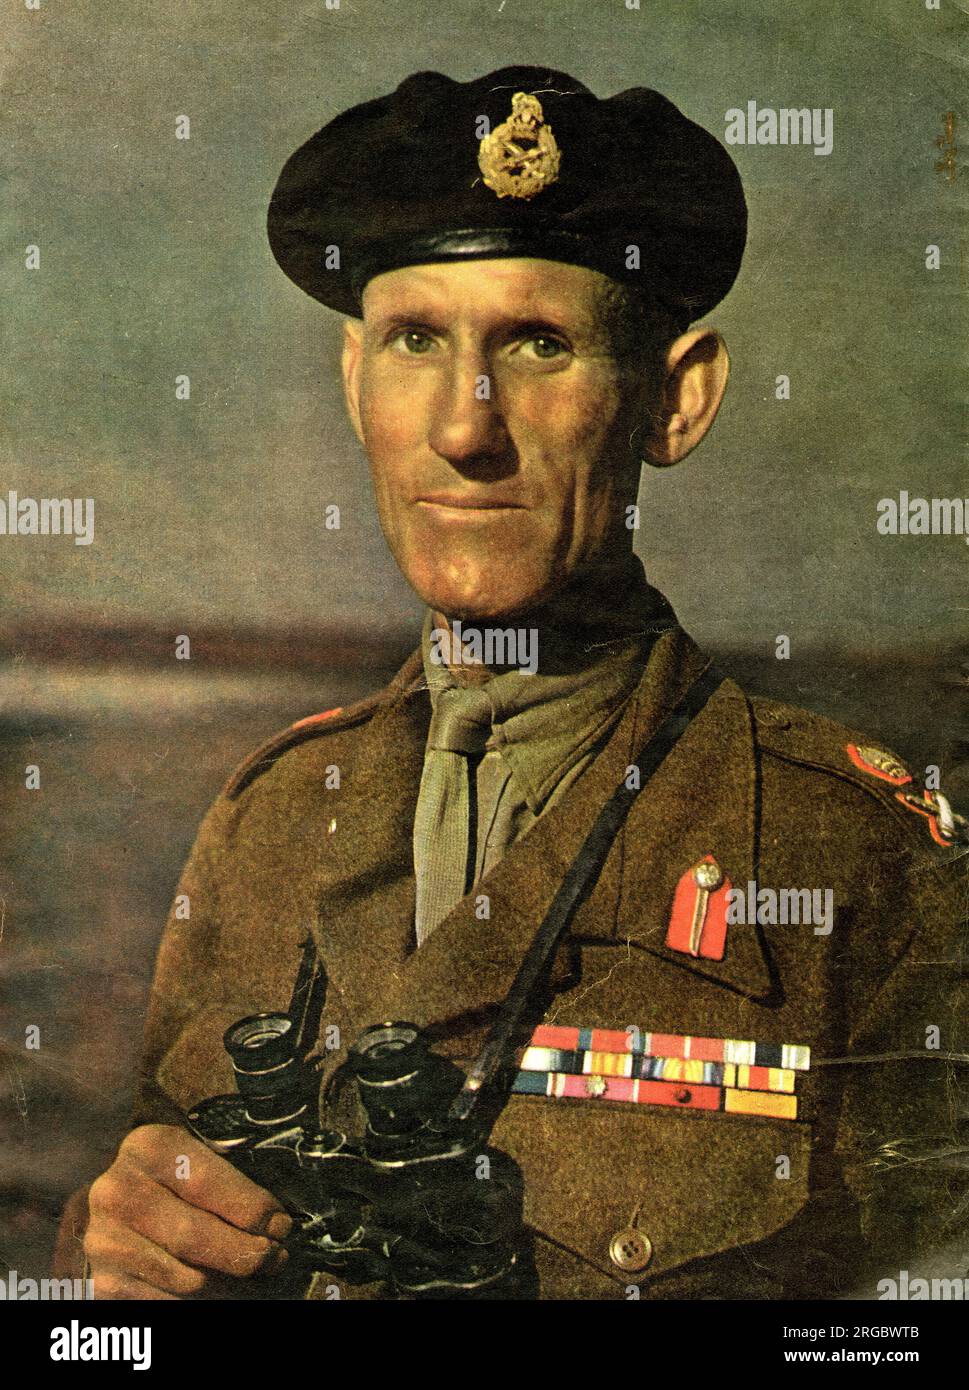 Le Lieutenant-général Sir R L McCreery commandant la huitième armée britannique opérant en Italie pendant la Seconde Guerre mondiale Banque D'Images